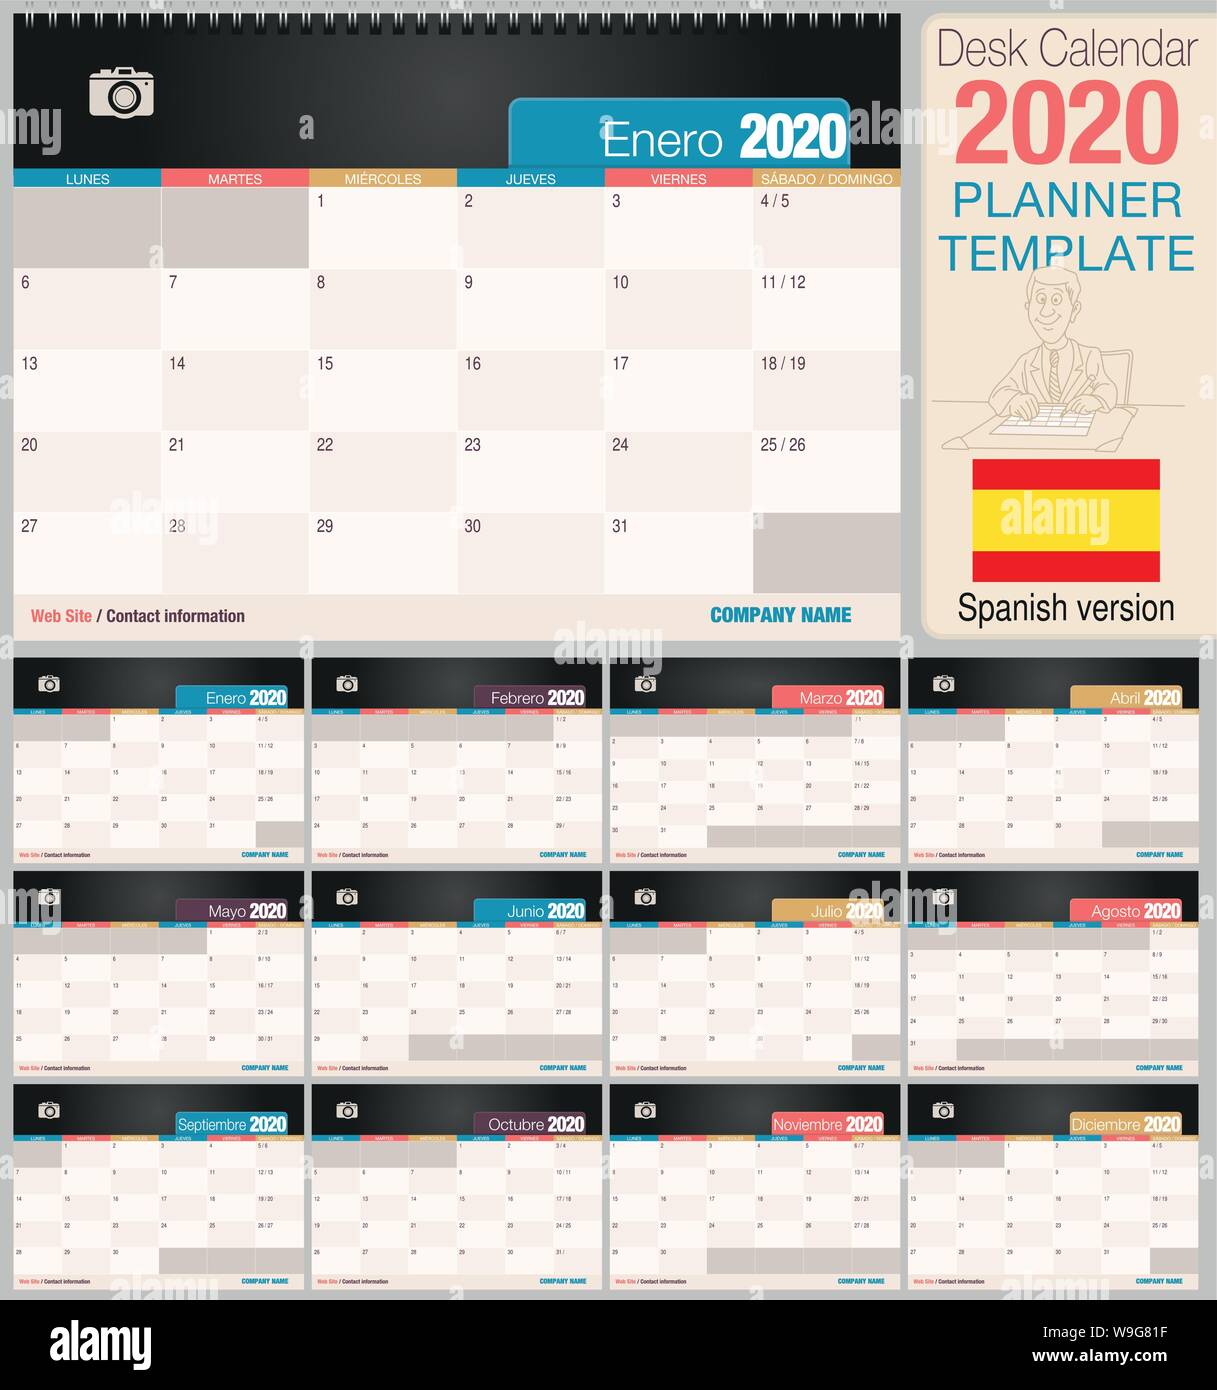 Utile scrivania calendario 2020 con lo spazio per posizionare una foto. Dimensioni: 210 mm x 148 mm. Versione spagnola - immagine vettoriale Illustrazione Vettoriale